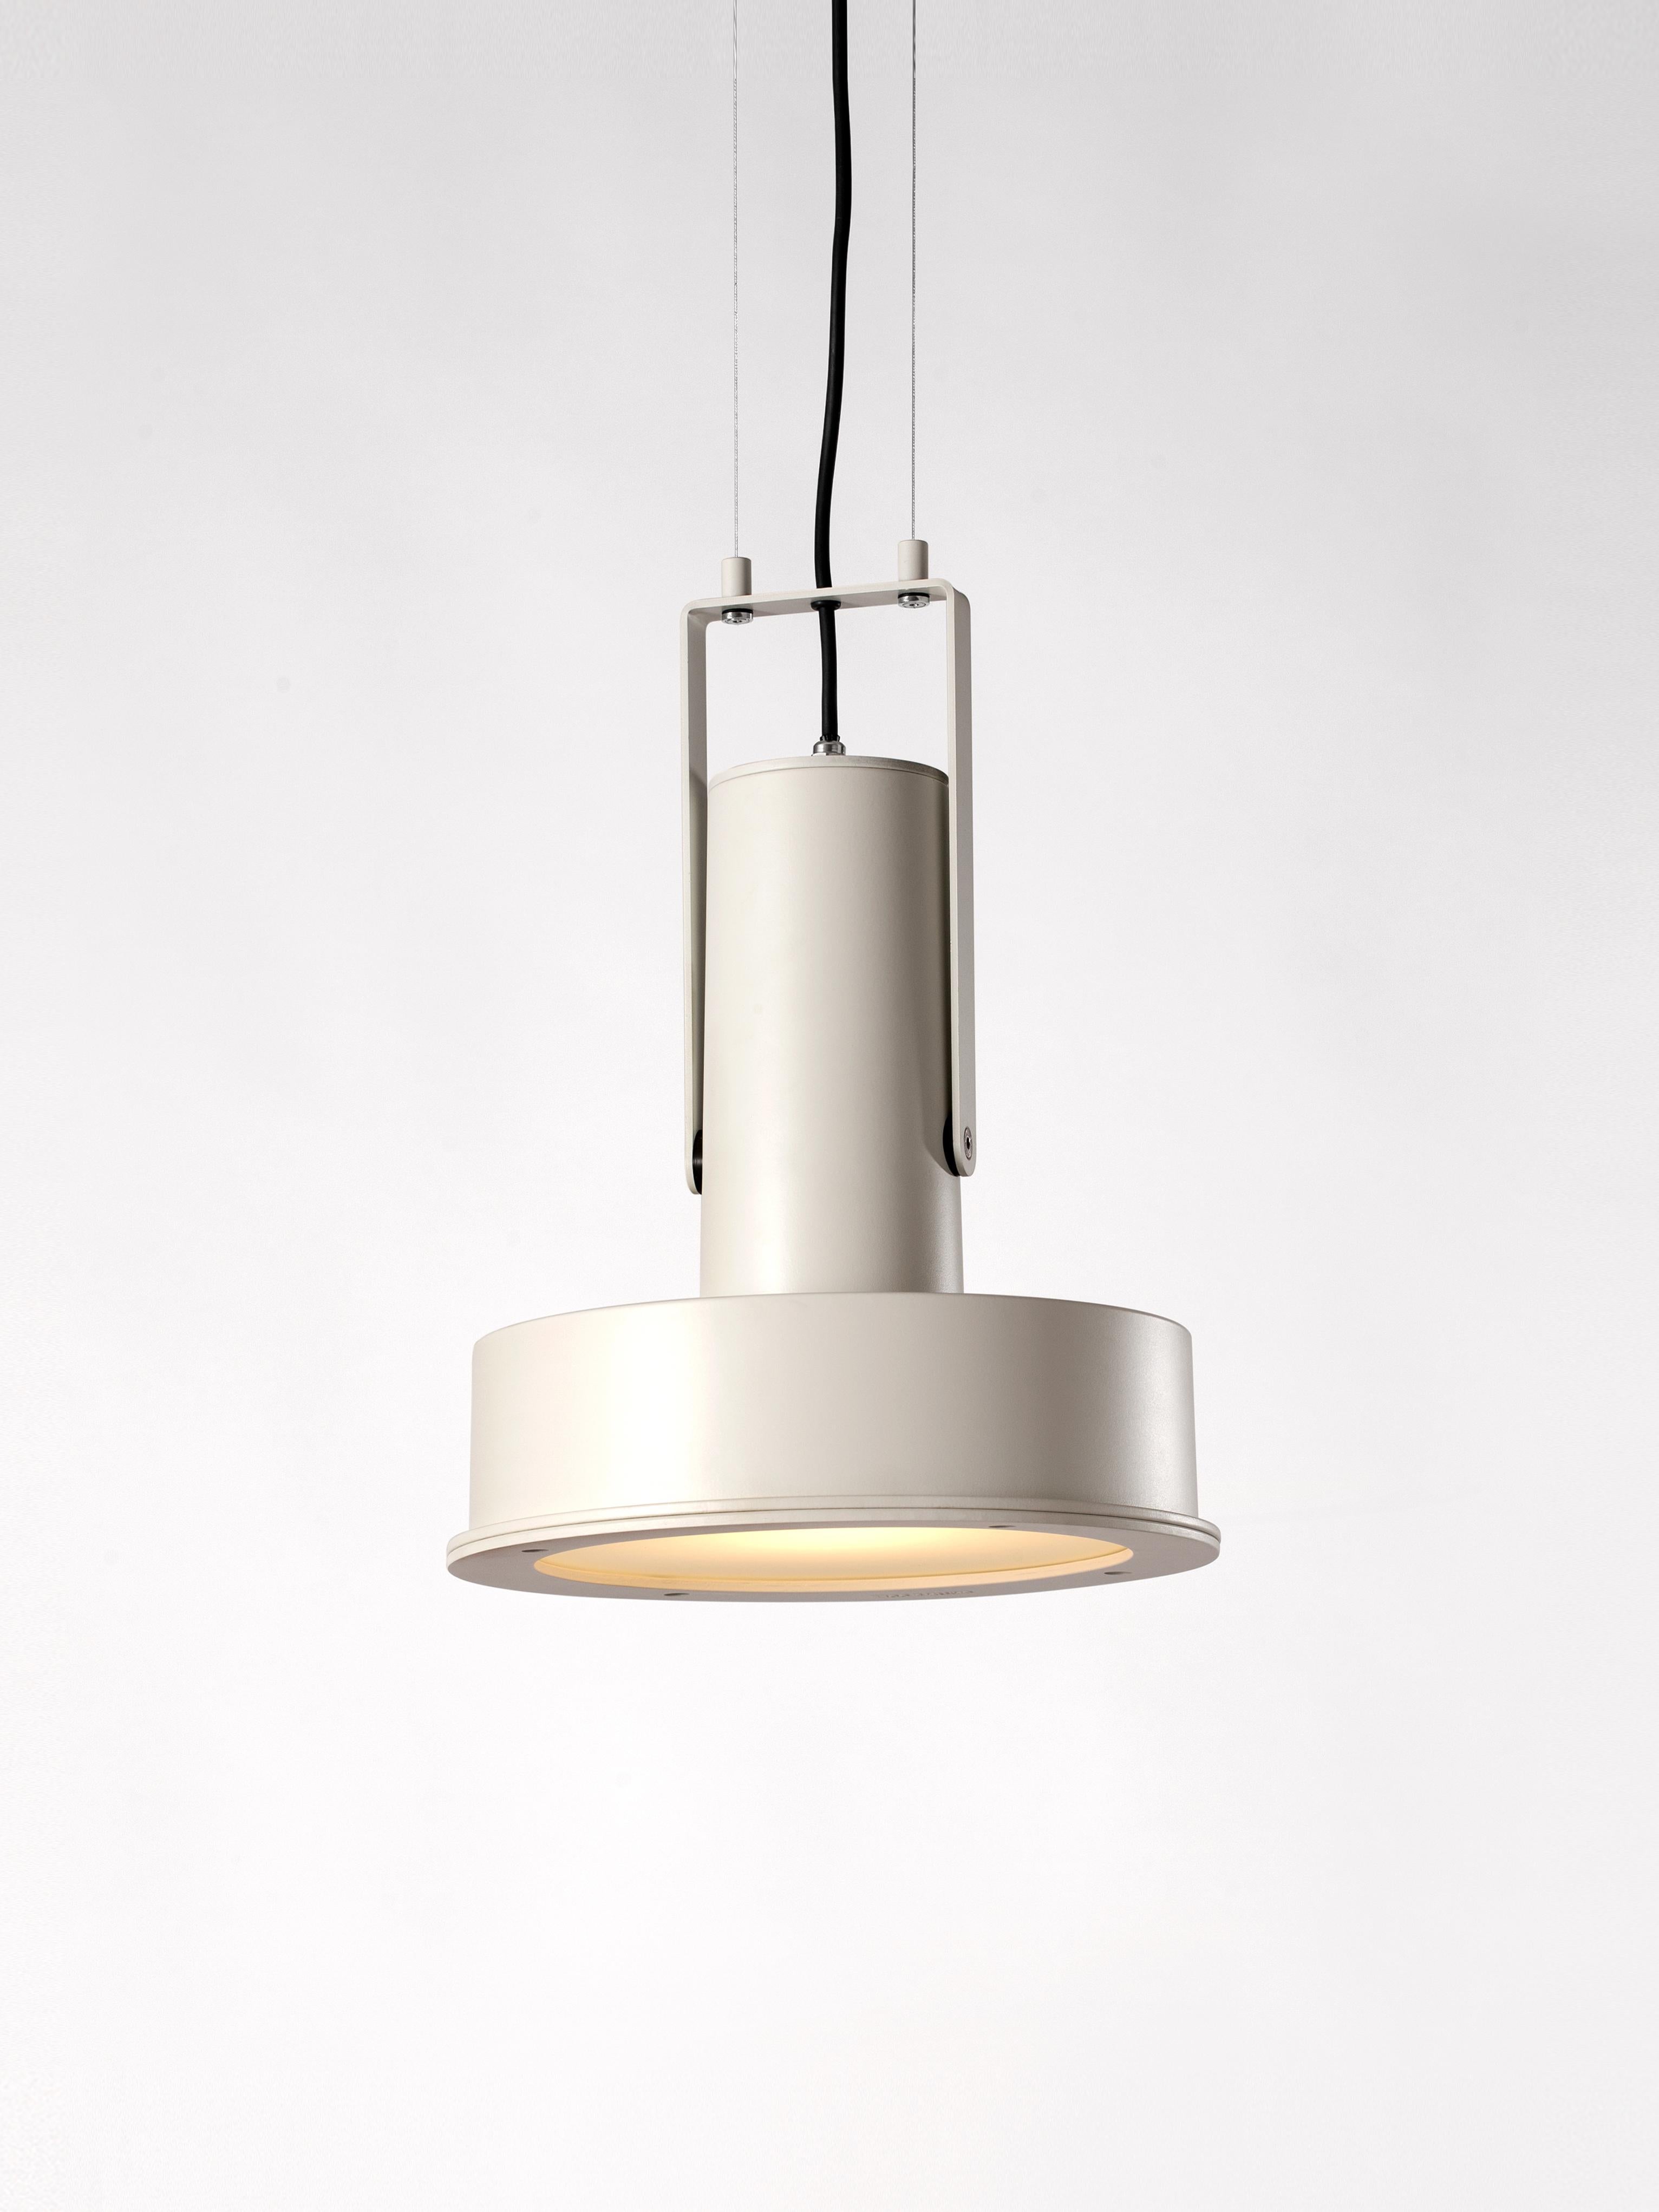 Lampe suspendue White Arne Domus de Santa & Cole
Dimensions : D 31 x H 440 cm
Matériaux : Métal, aluminium.
Disponible dans d'autres couleurs.

Cet élégant projecteur fonctionne aussi bien à l'intérieur qu'à l'extérieur. Son corps en aluminium